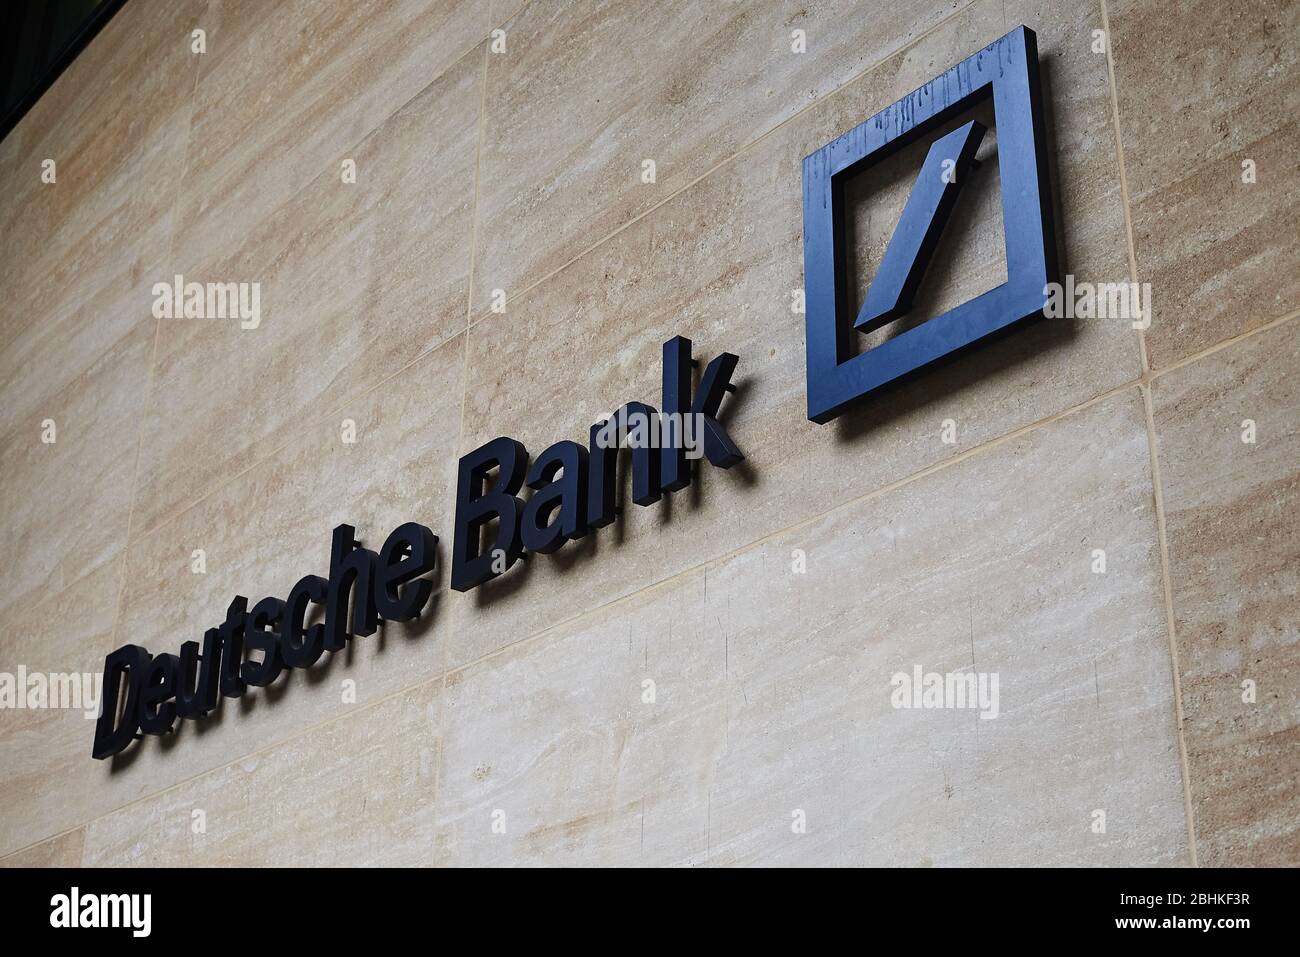 Deutsche Bank sign exterior Stock Photo